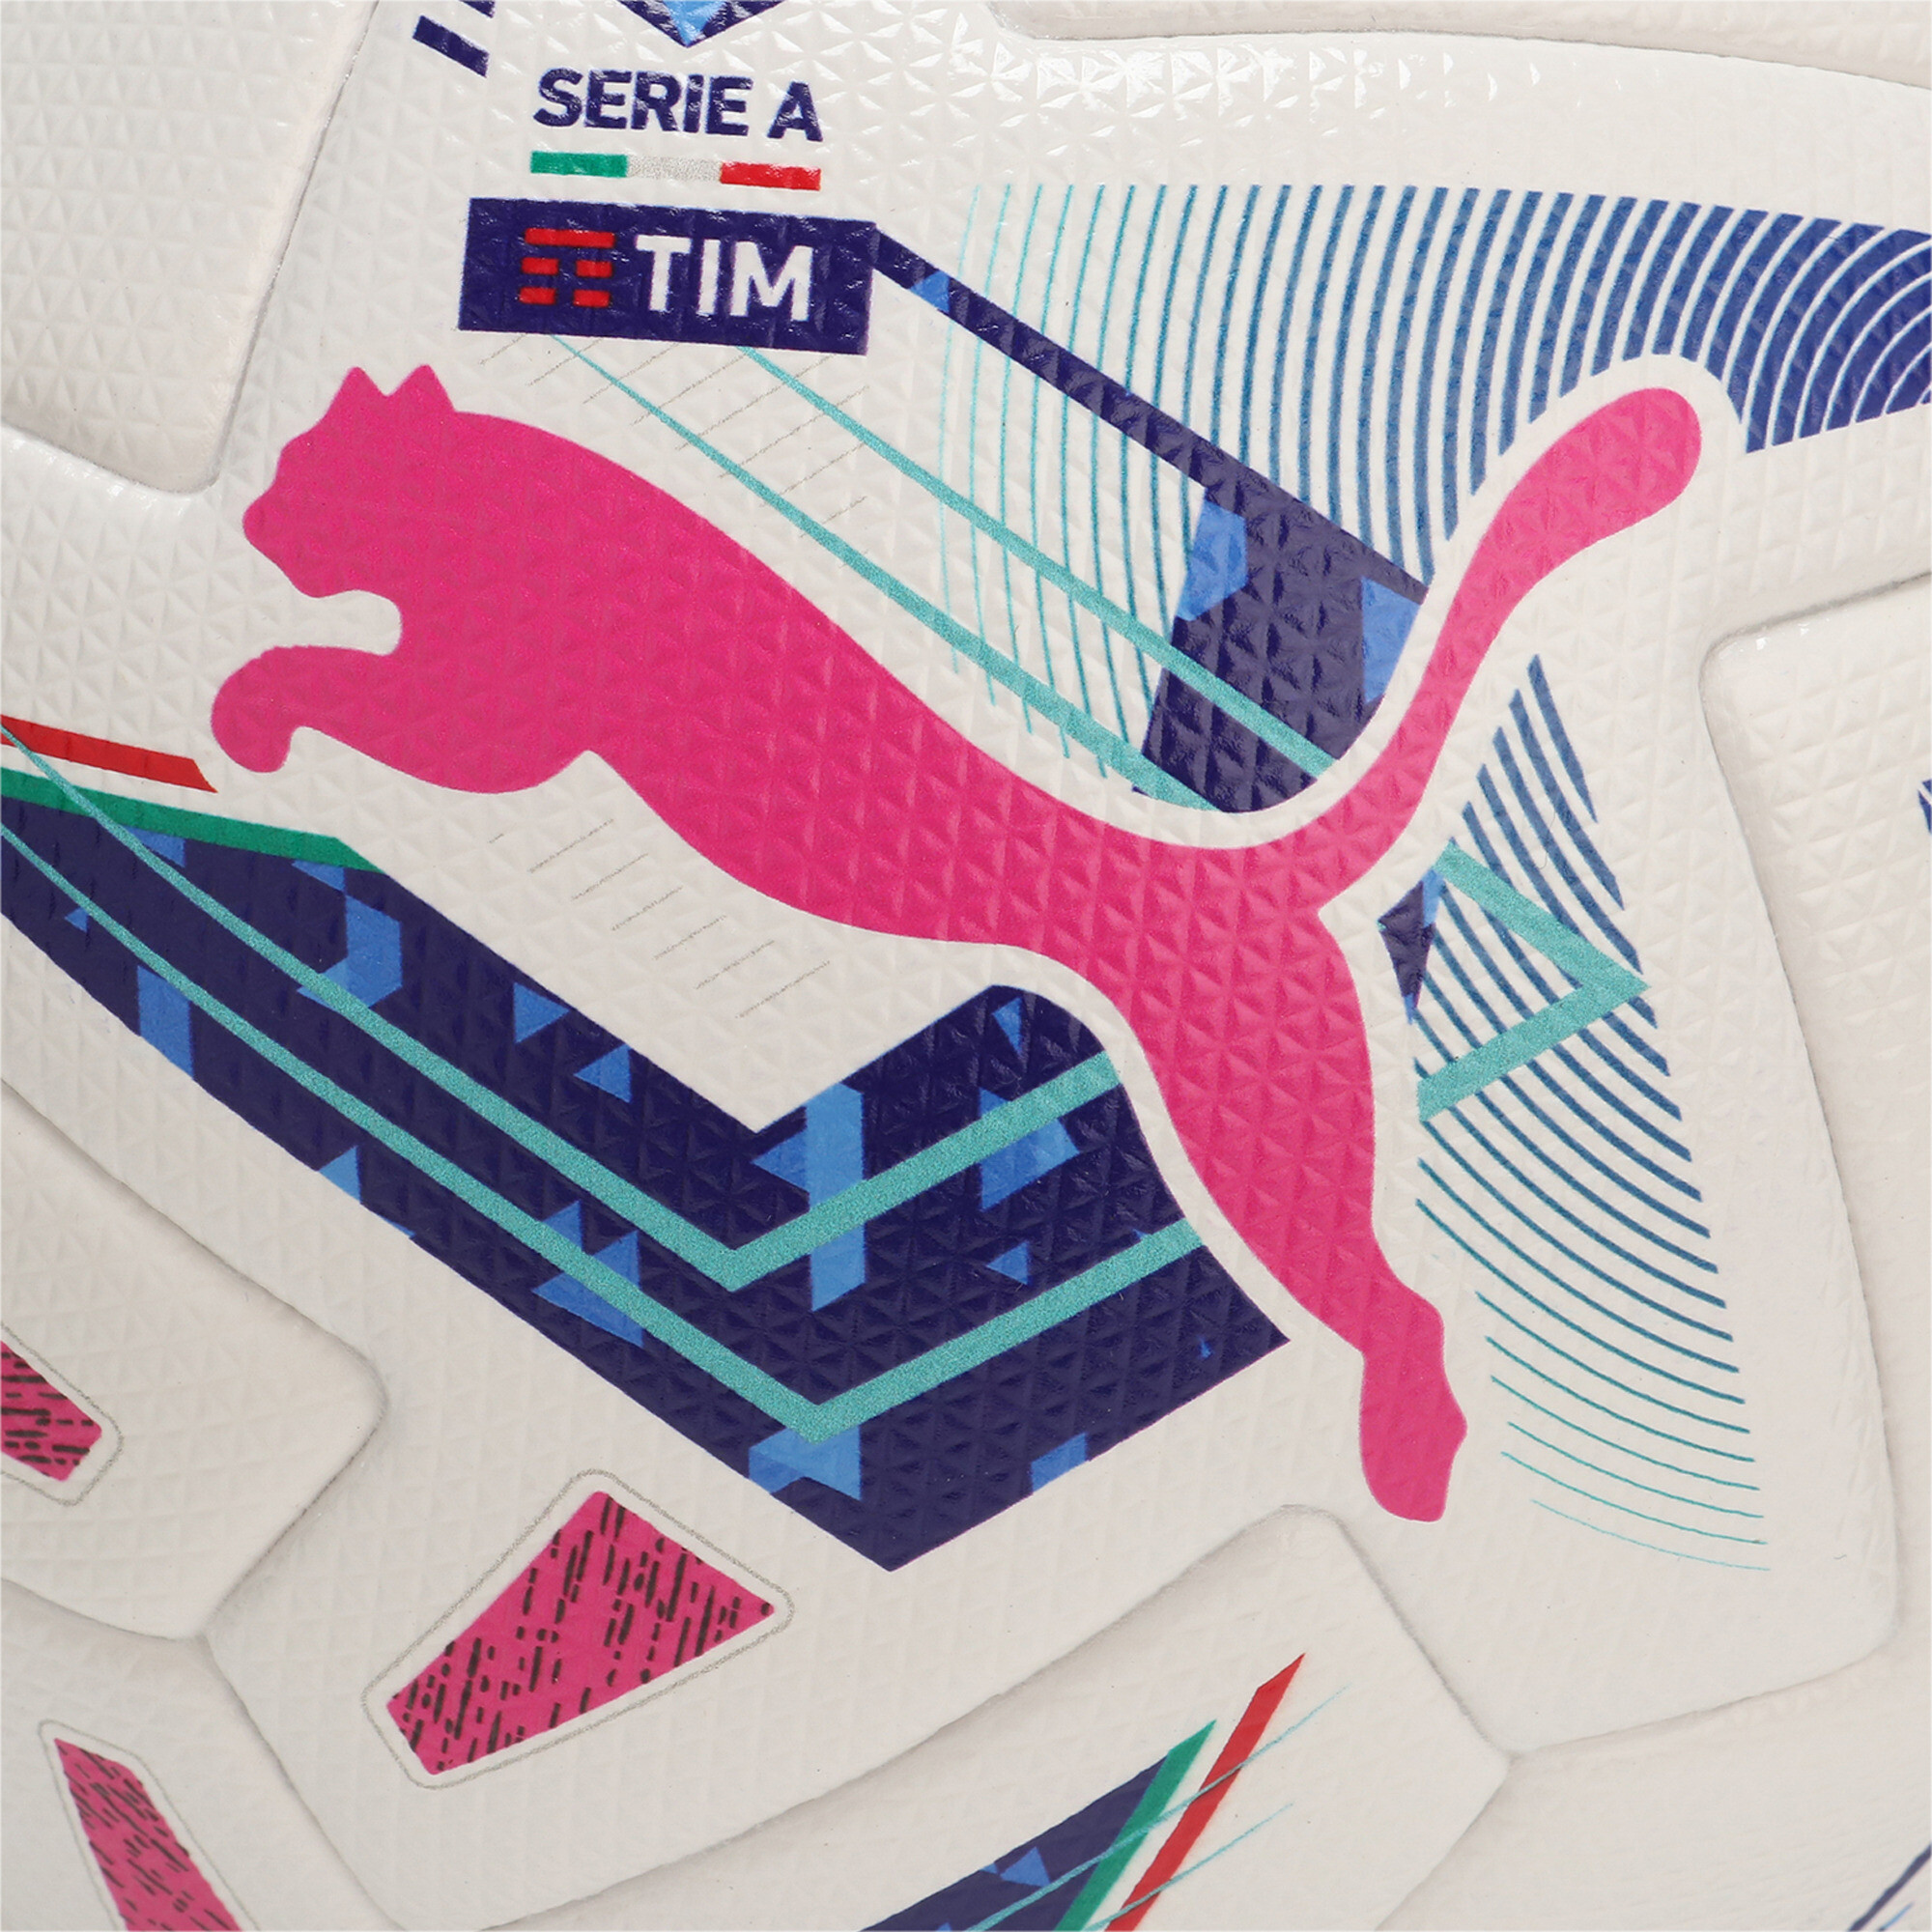 Puma Orbita Serie A Pro Football, White, Size 5, Accessories